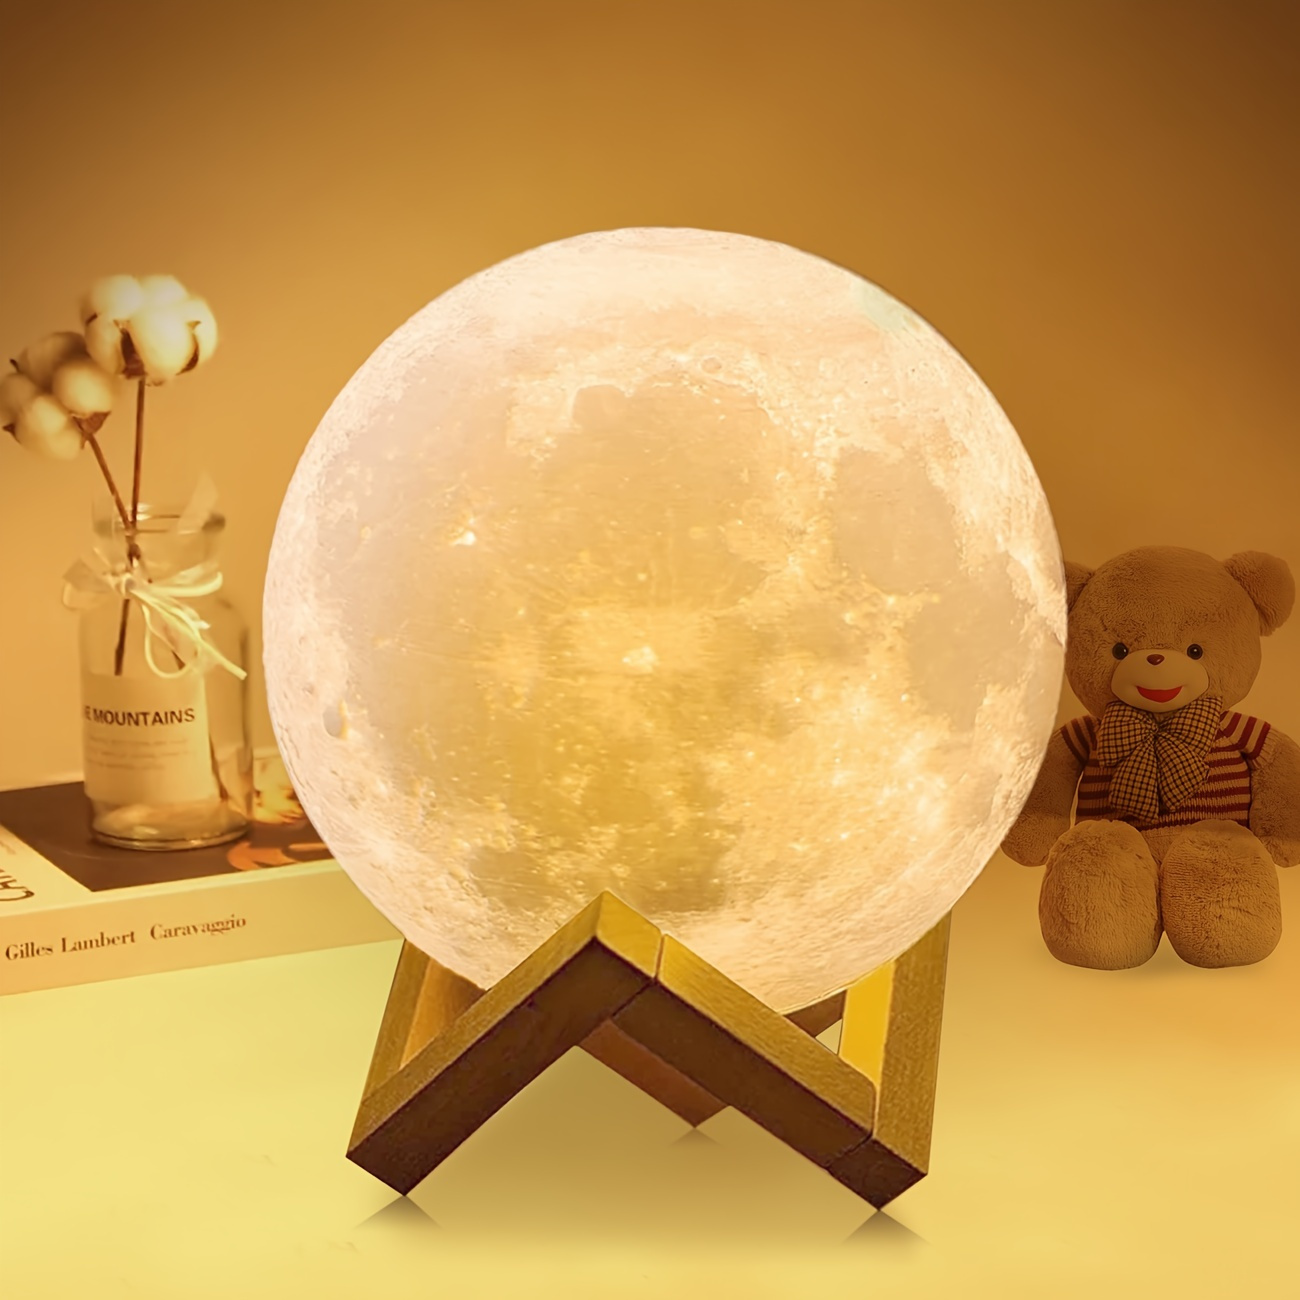 Lumilights - Magische 3D LED Lampen Nachtlichter Mond Lampen kaufen